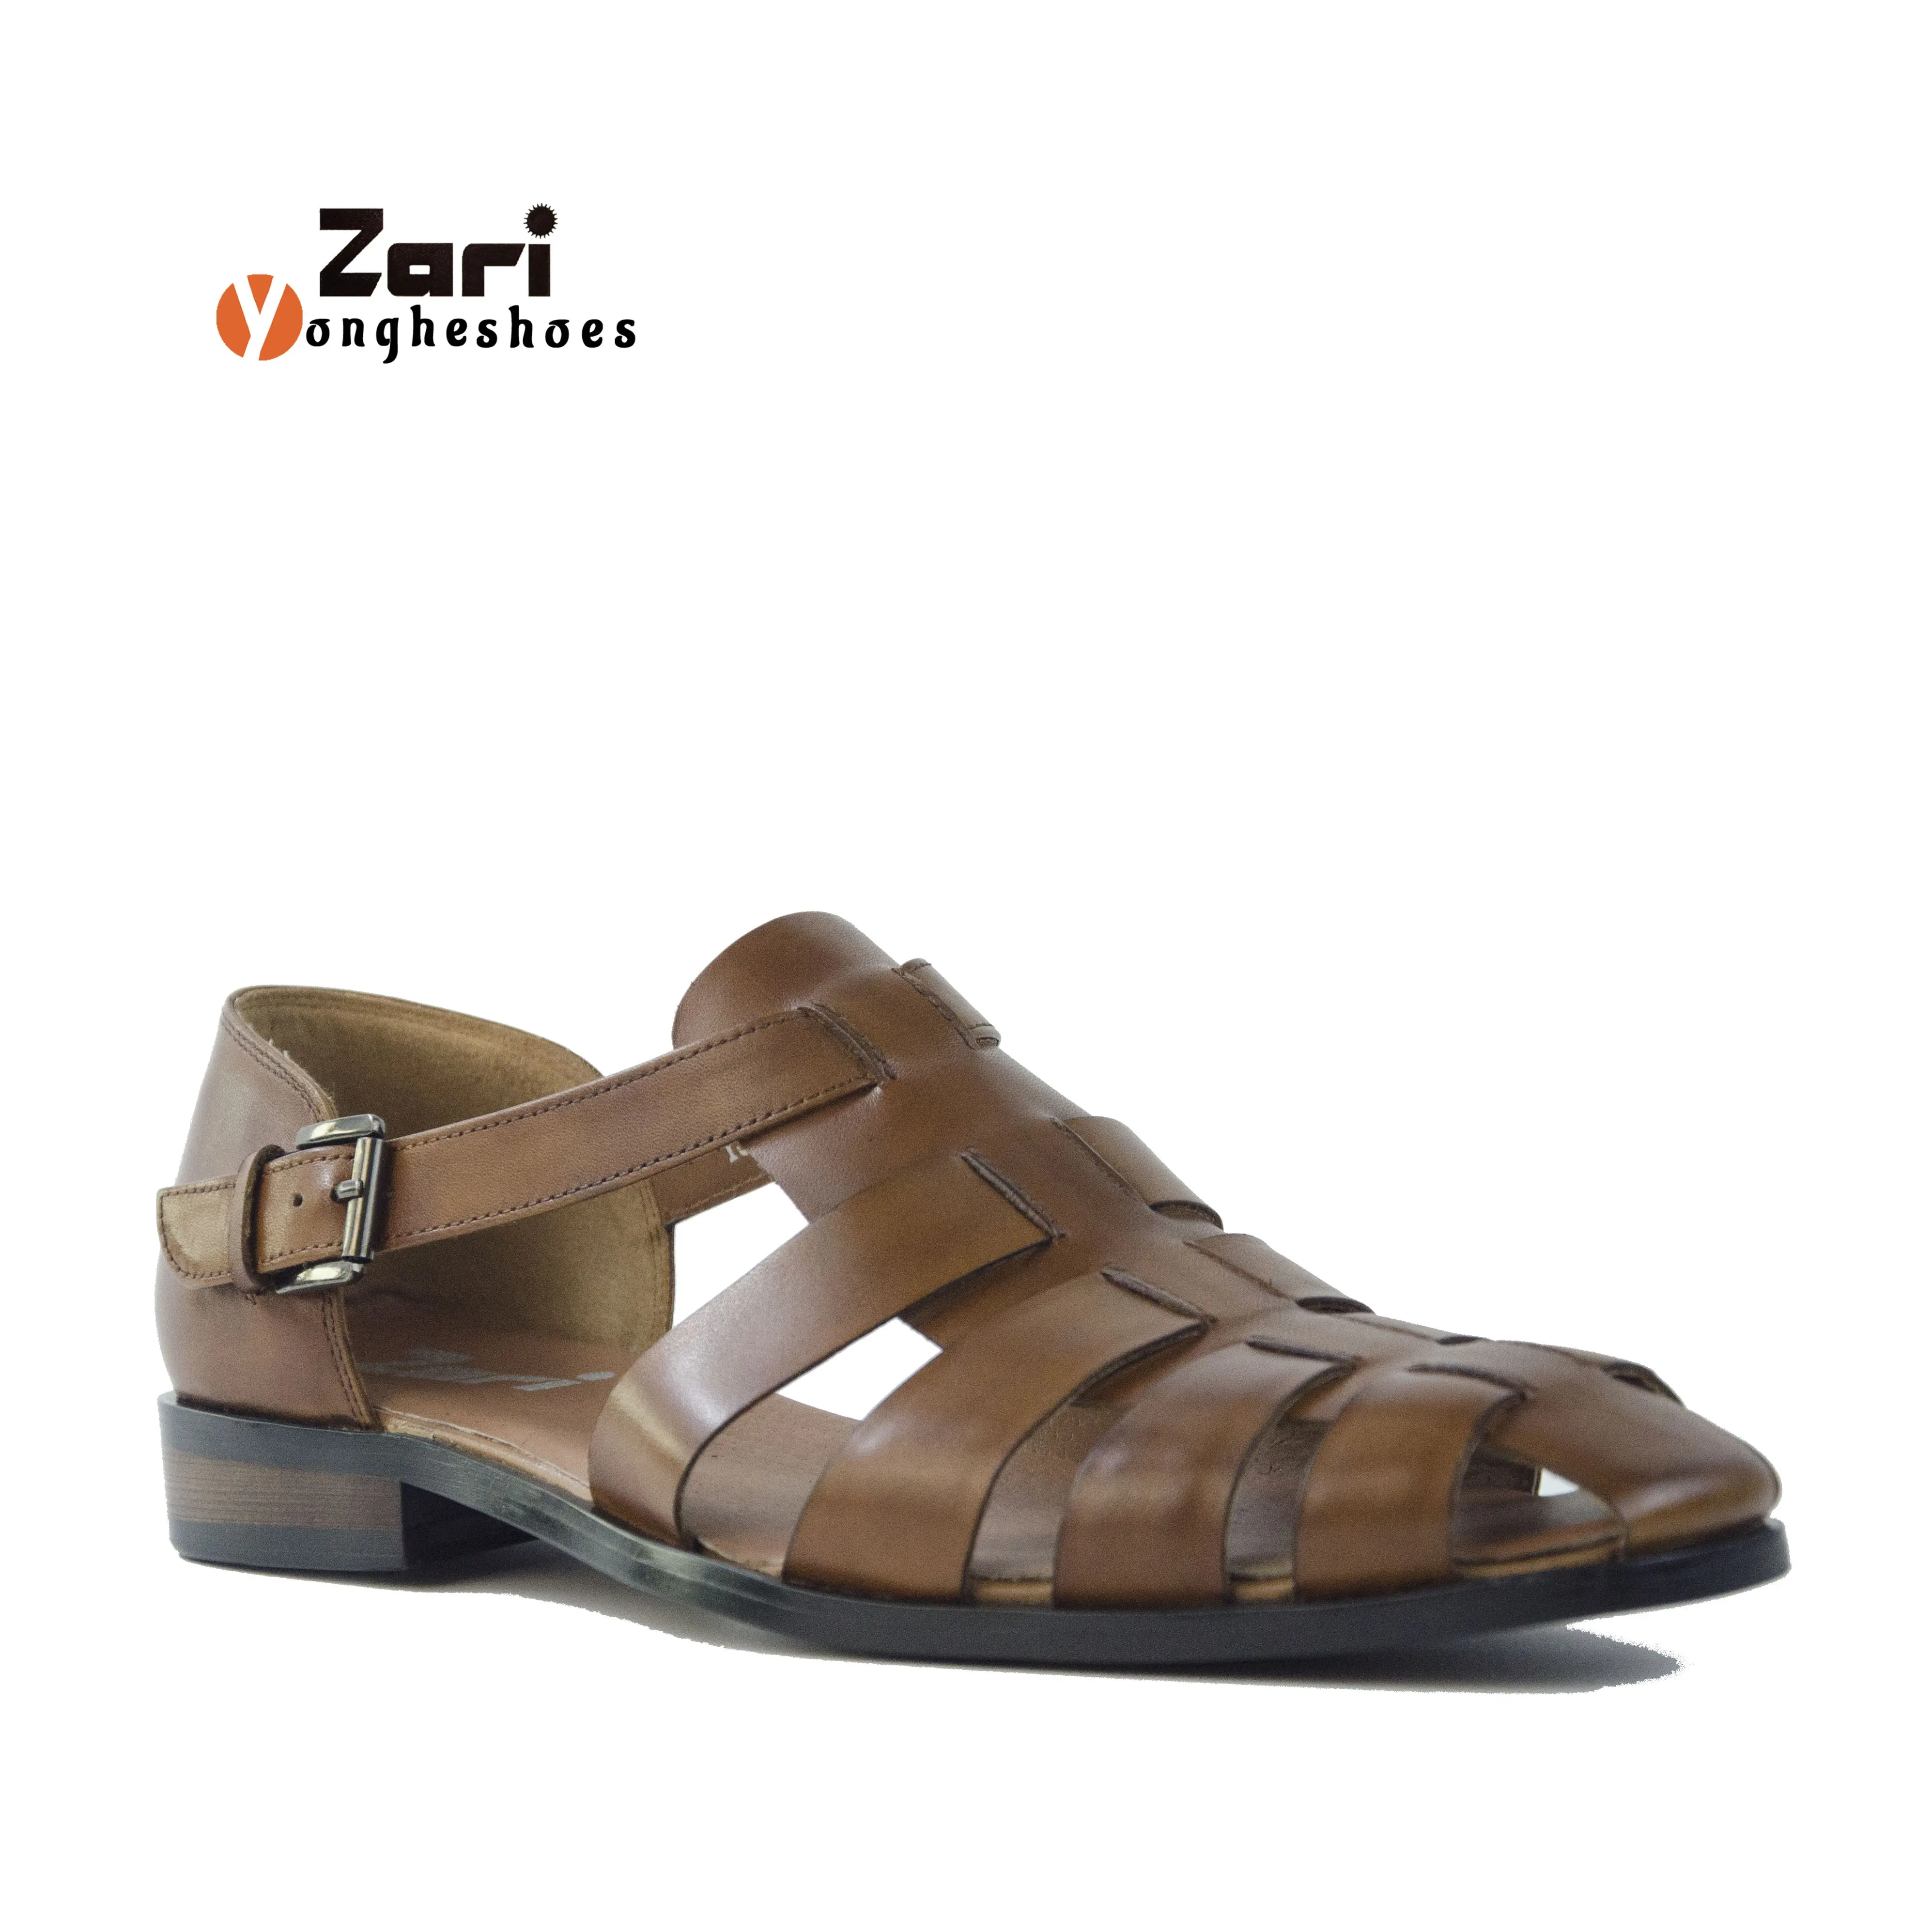 Hand sandals men's Sandals Leather Slippers Slide Sandals For Men